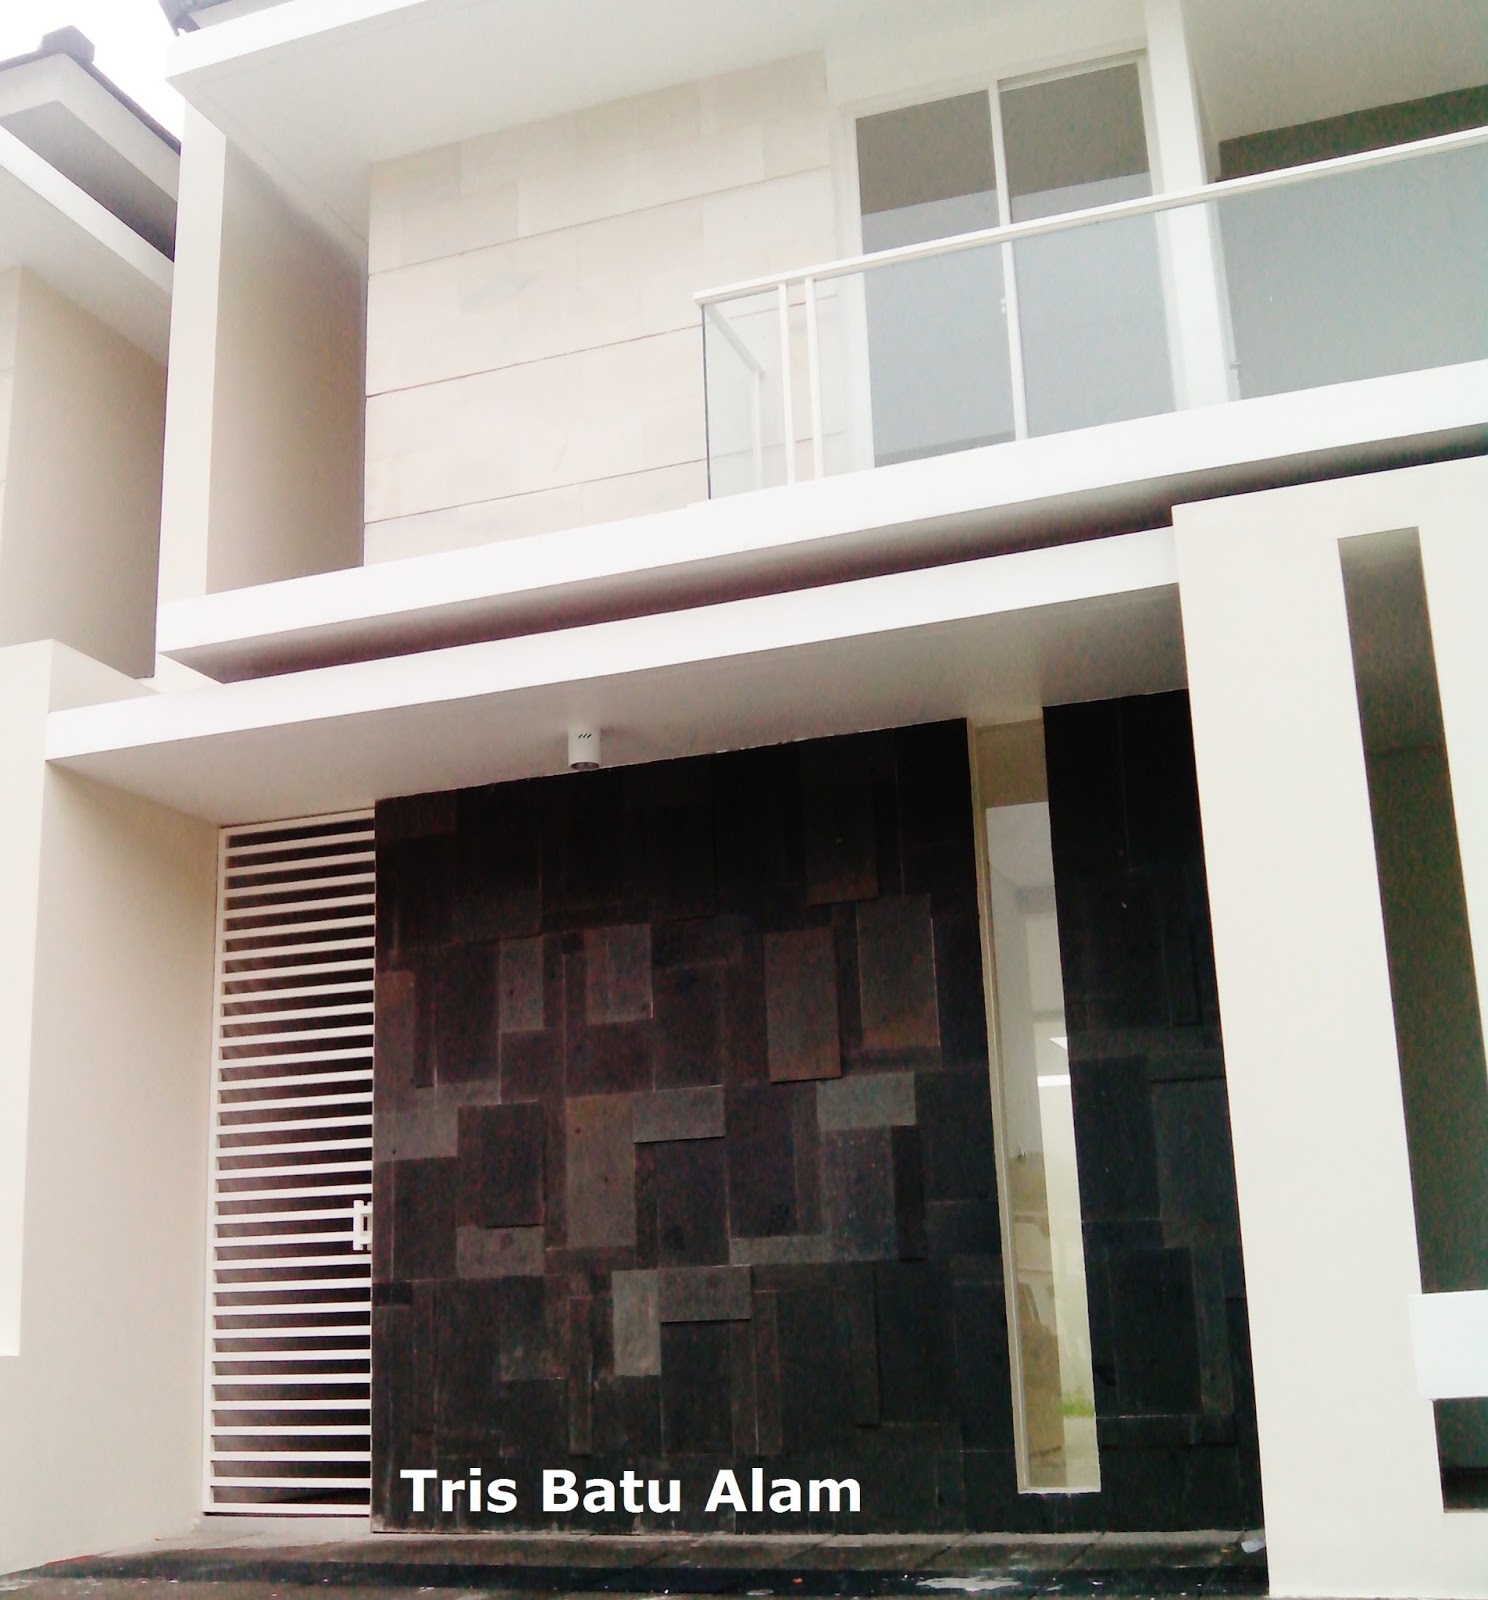 Batu Alam Paras Jogja Putih Halus Pada Dinding Lantai Dua Rumah Minimalis Tris Batu Alam Surabaya